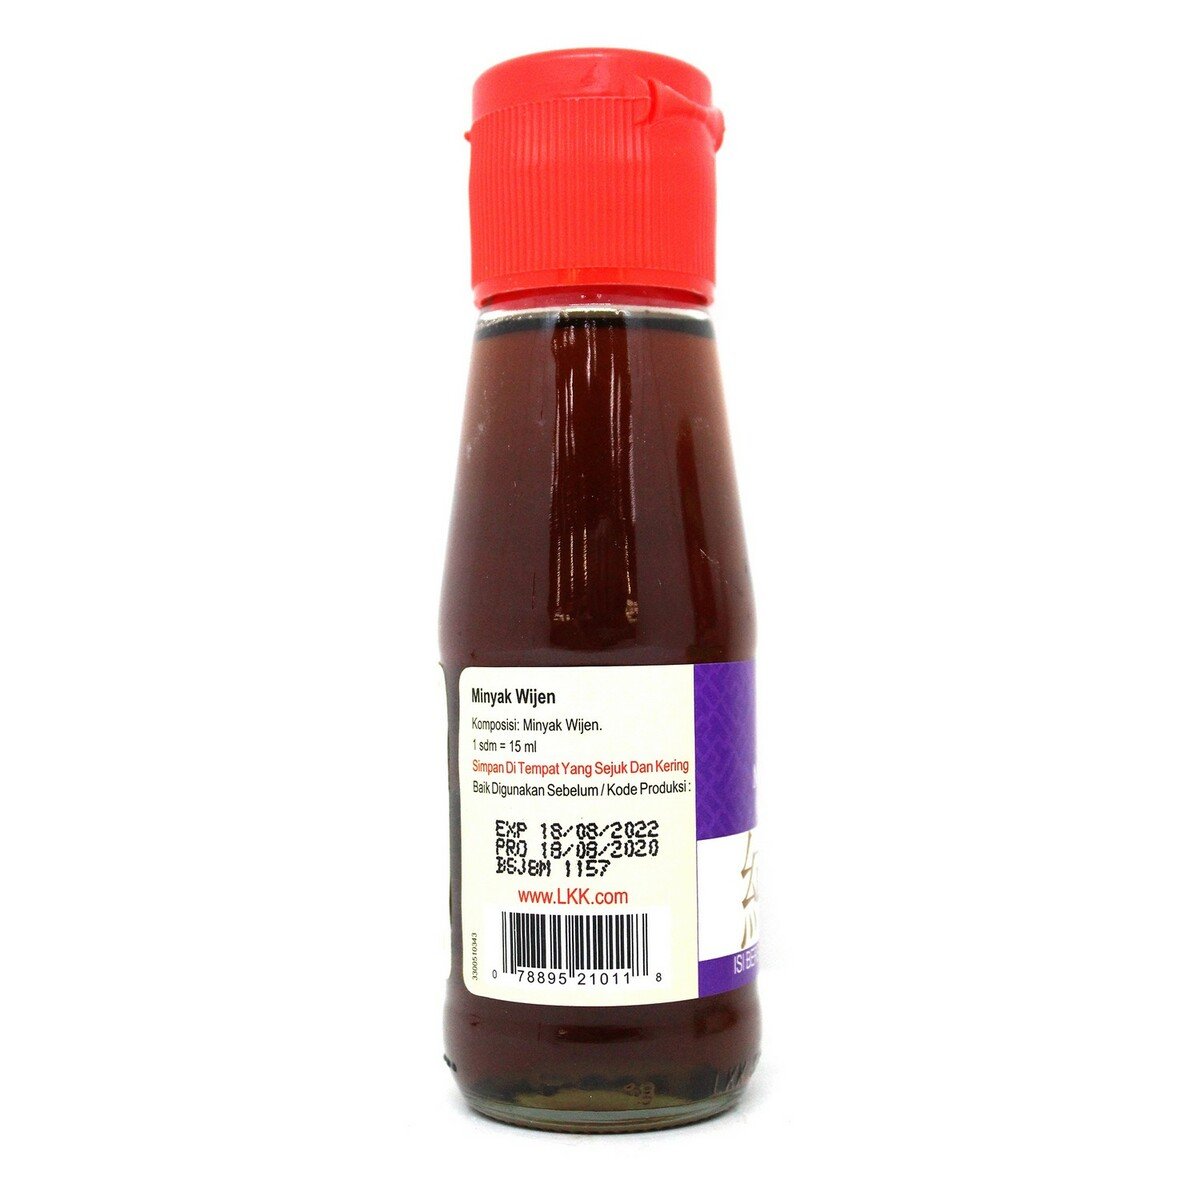 Lee Kum Kee Pure Sesame Oil 115ml